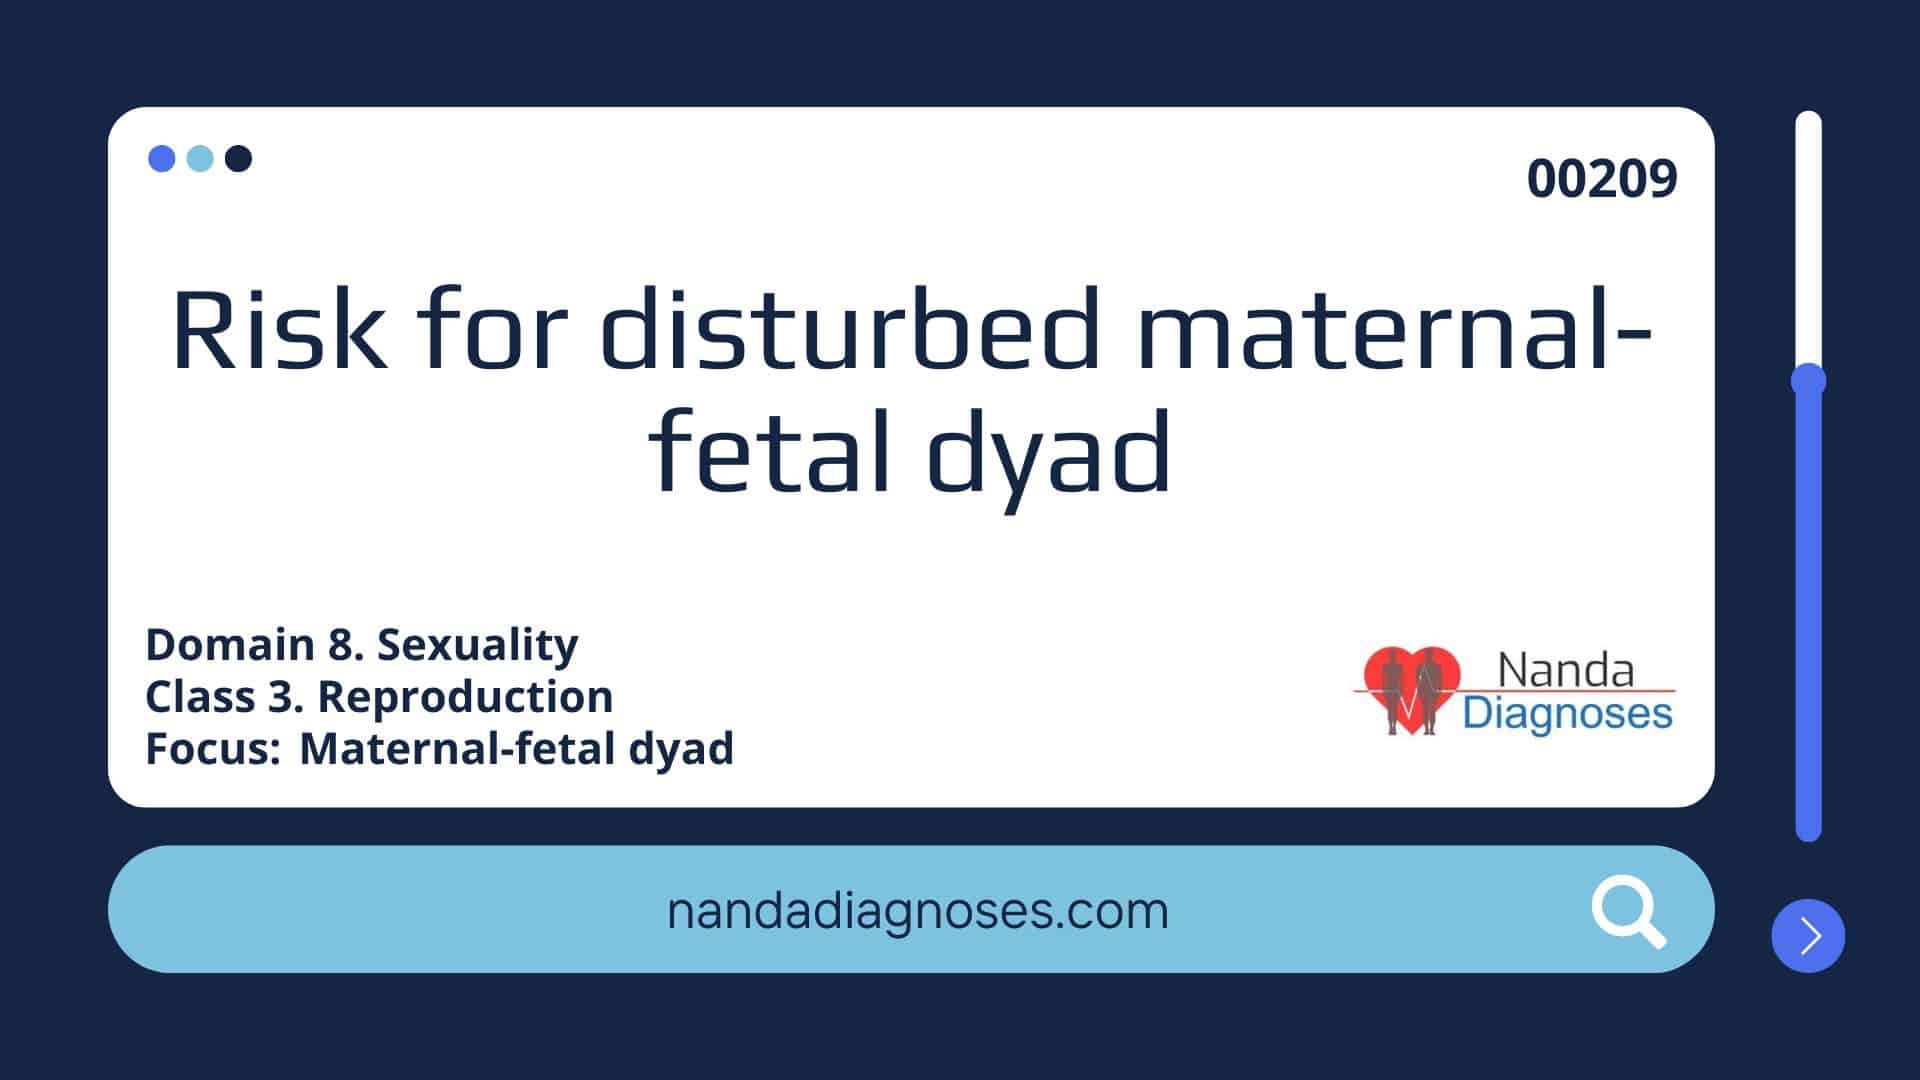 Nursing diagnosis Risk for disturbed maternal fetal dyad